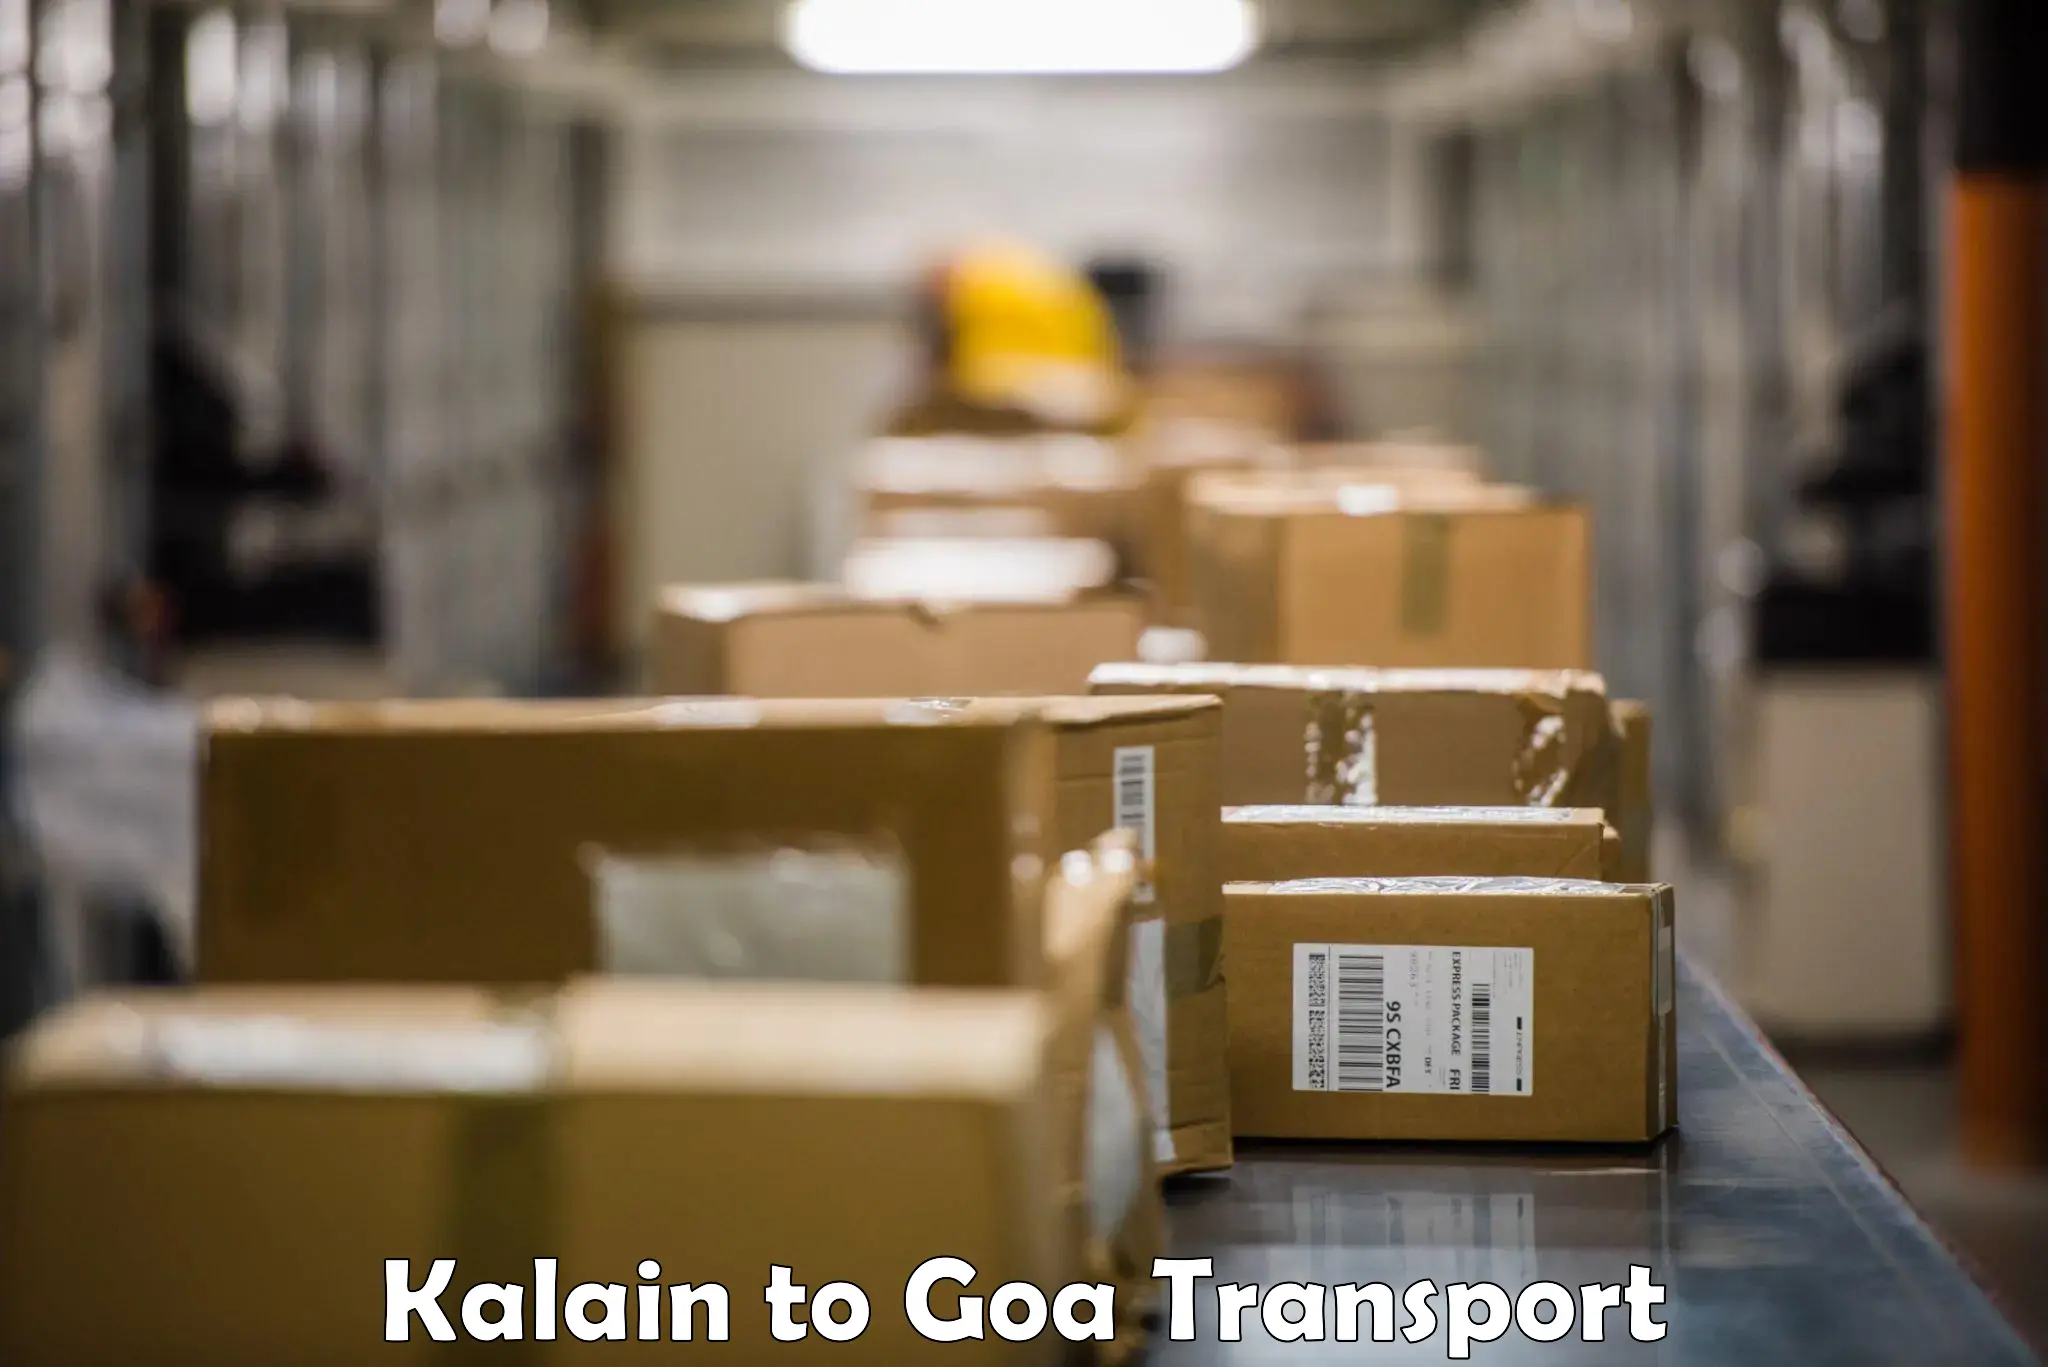 Door to door transport services Kalain to Goa